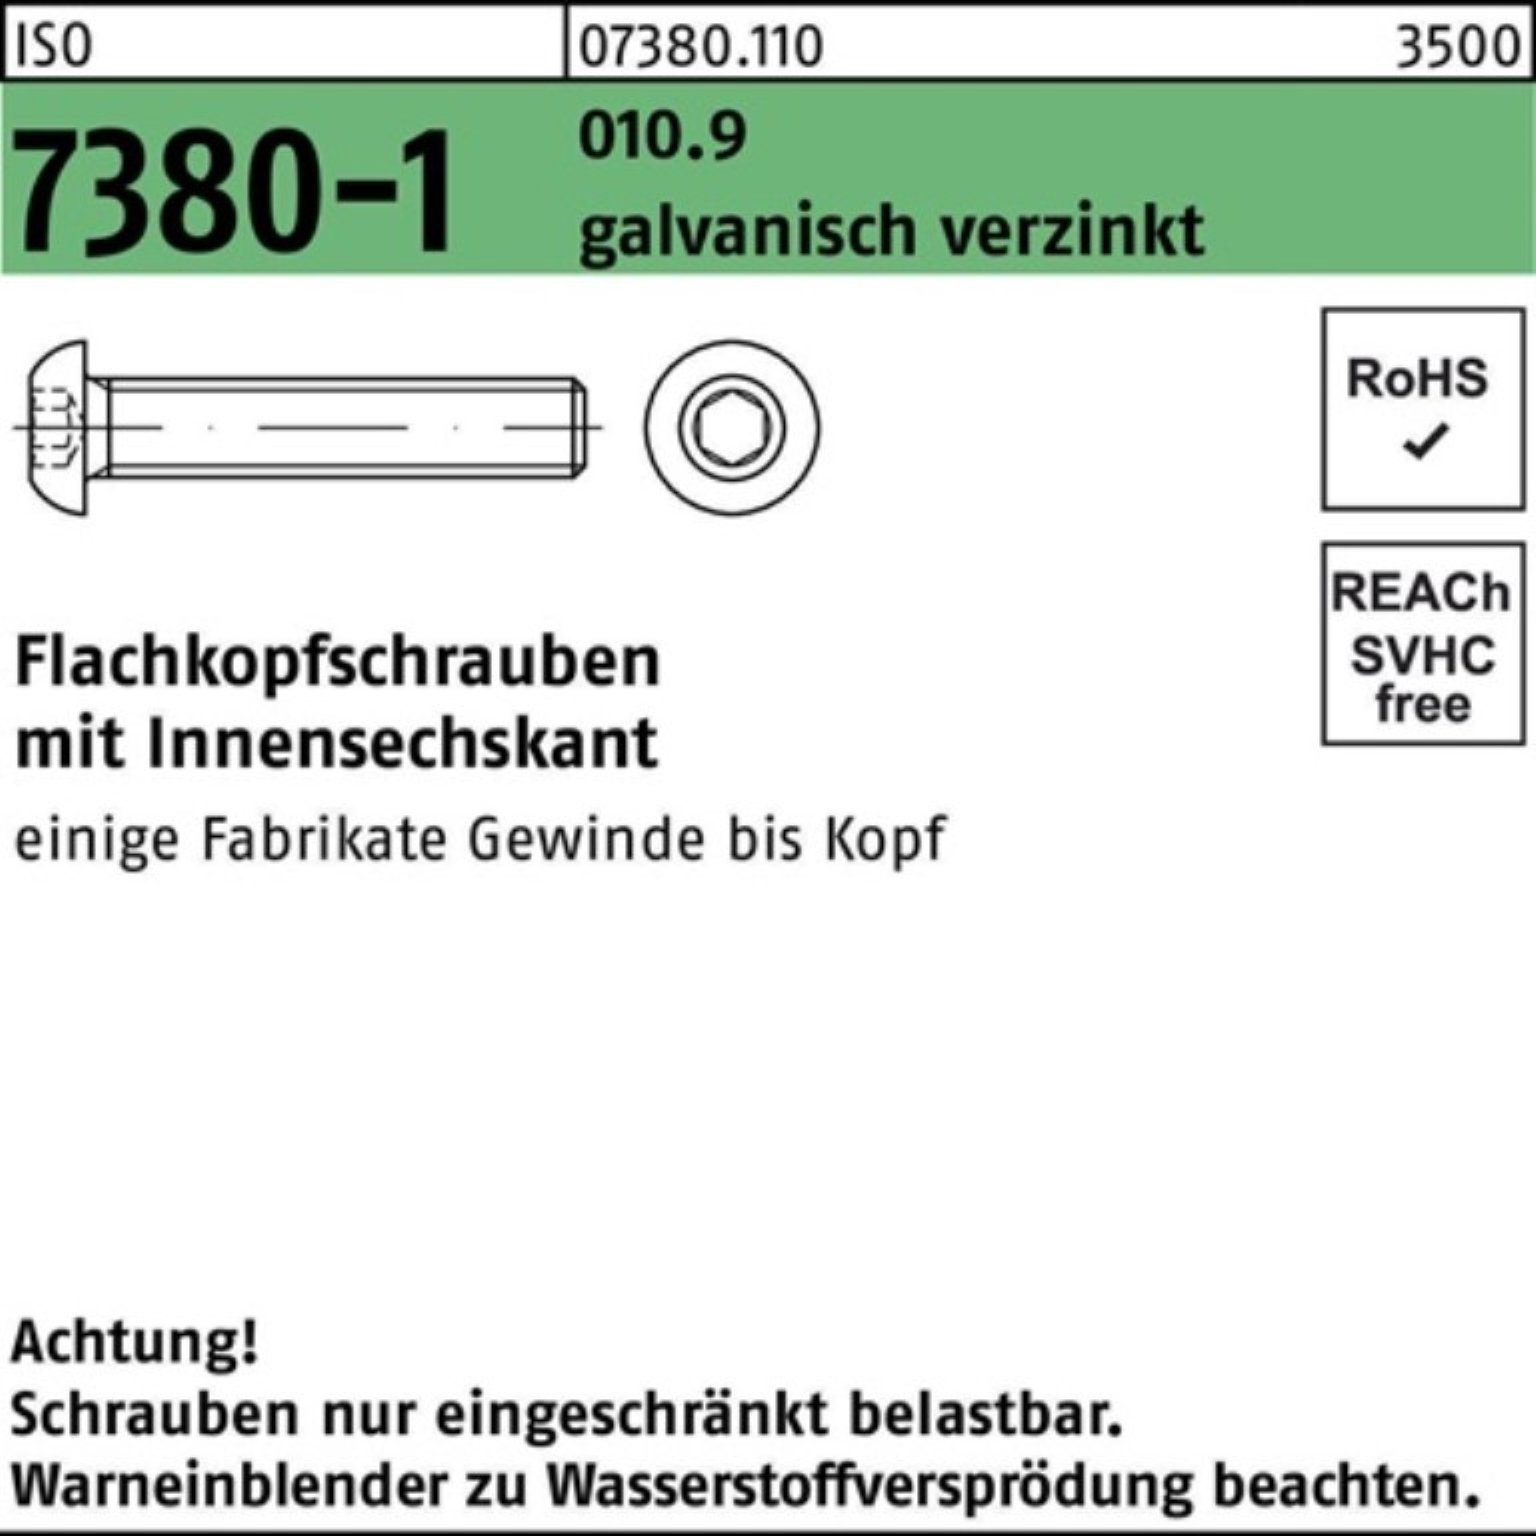 Reyher Schraube 500er ISO Innen-6kt M4x20 Flachkopfschraube 7380-1 galv.ver Pack 010.9